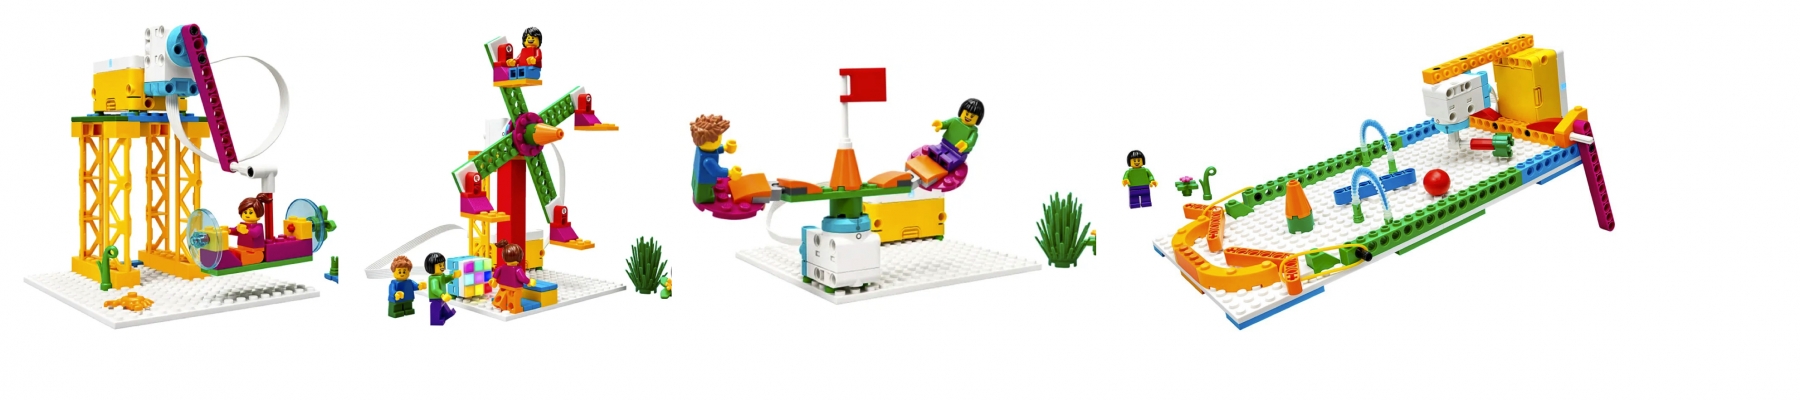 ROBOTS BOUWEN MET LEGO SPIKE ESSENTIAL  (22 JUNI)